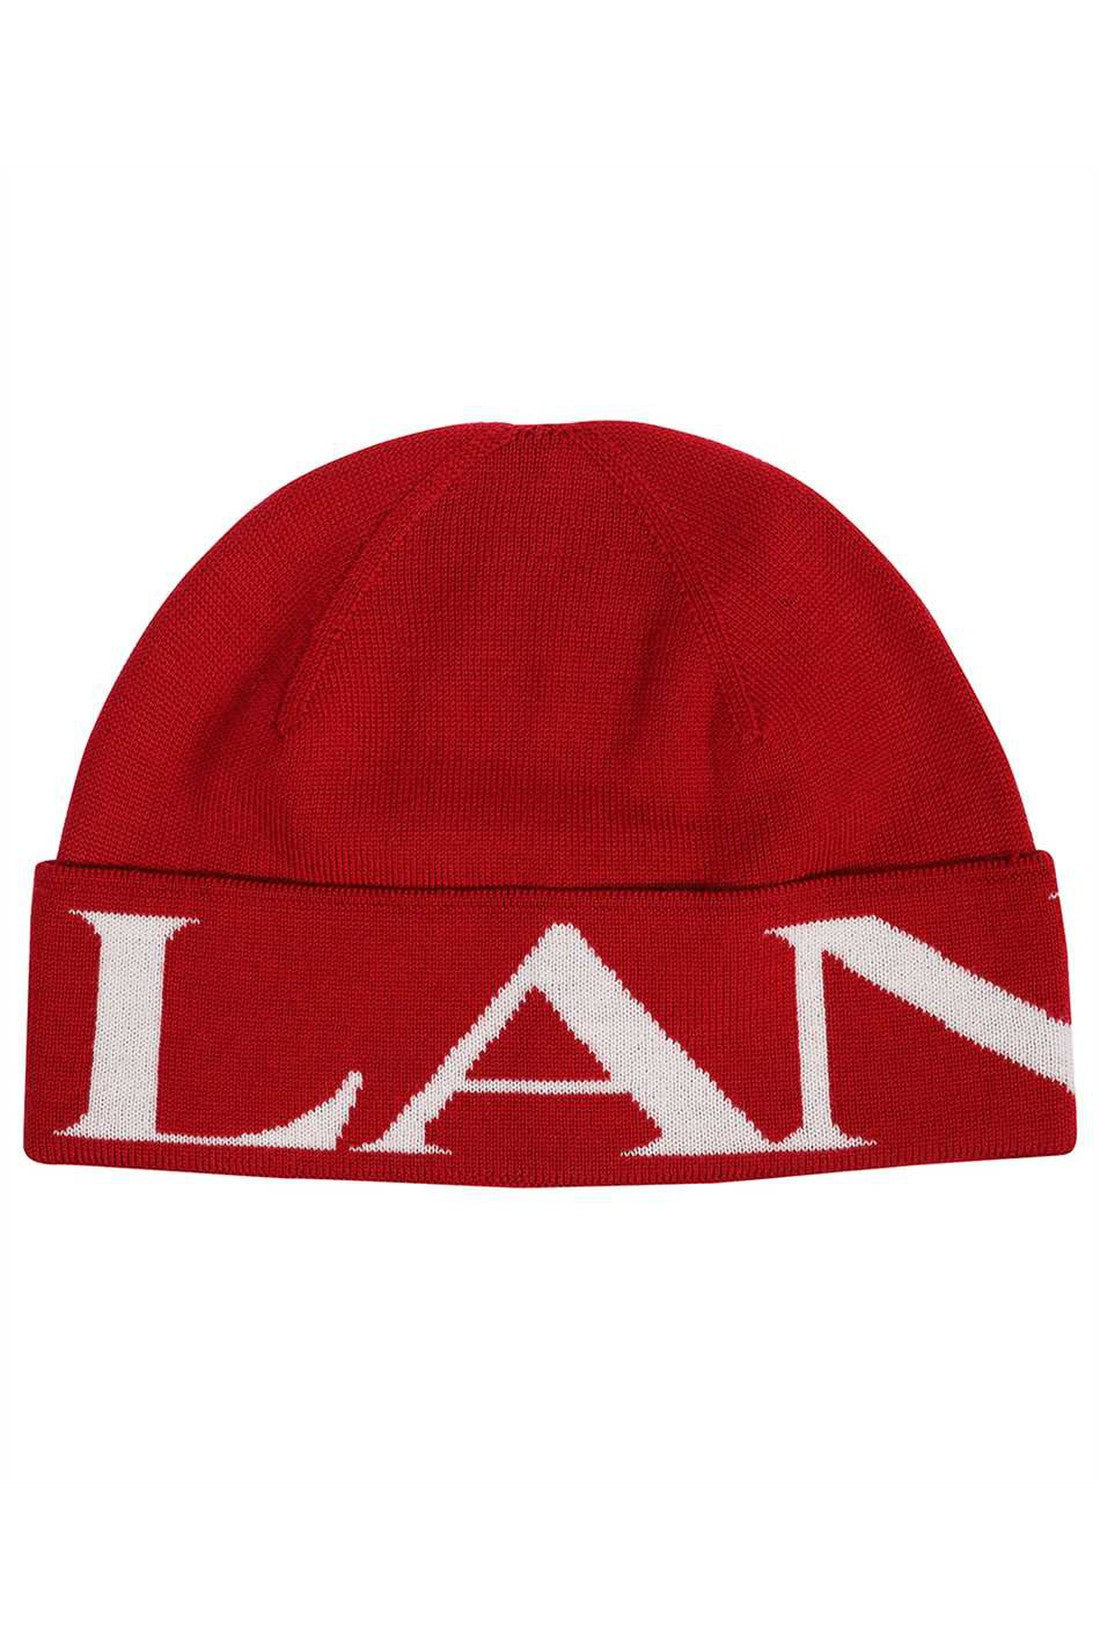 Wool hat-Lanvin-OUTLET-SALE-TU-ARCHIVIST